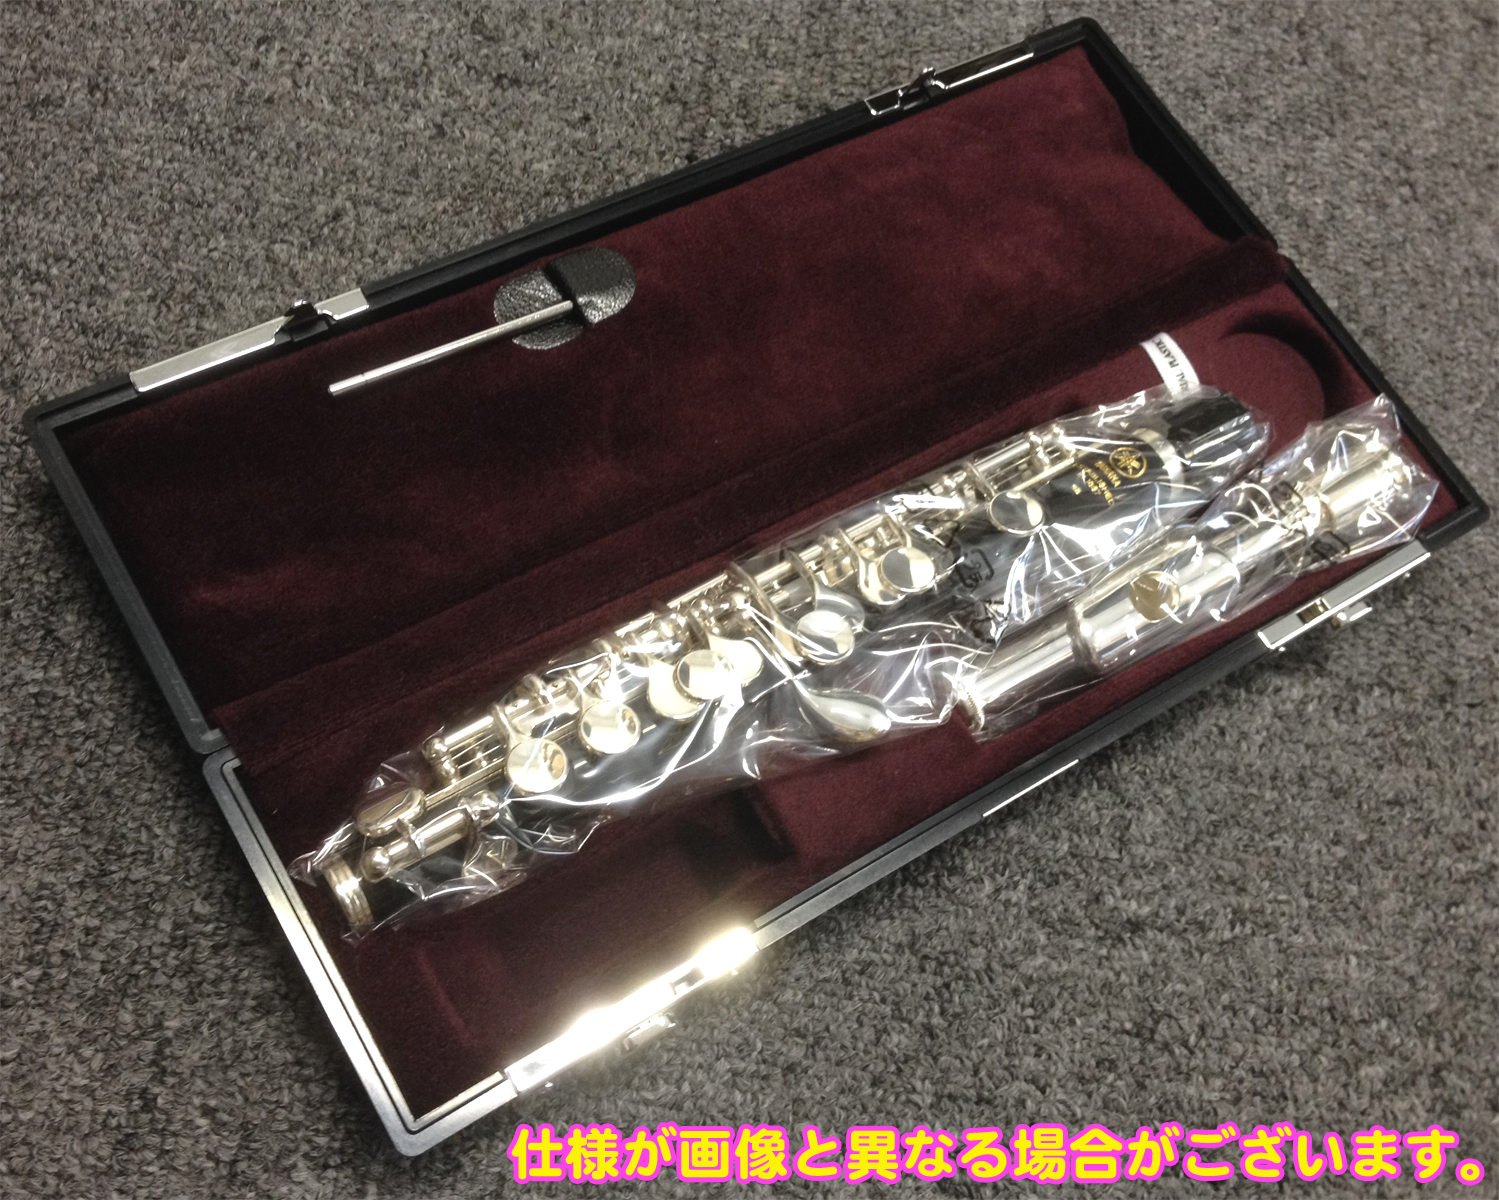 YAMAHA ( ヤマハ ) YPC-32 ピッコロ 樹脂製 正規品 管楽器 Eメカニズム